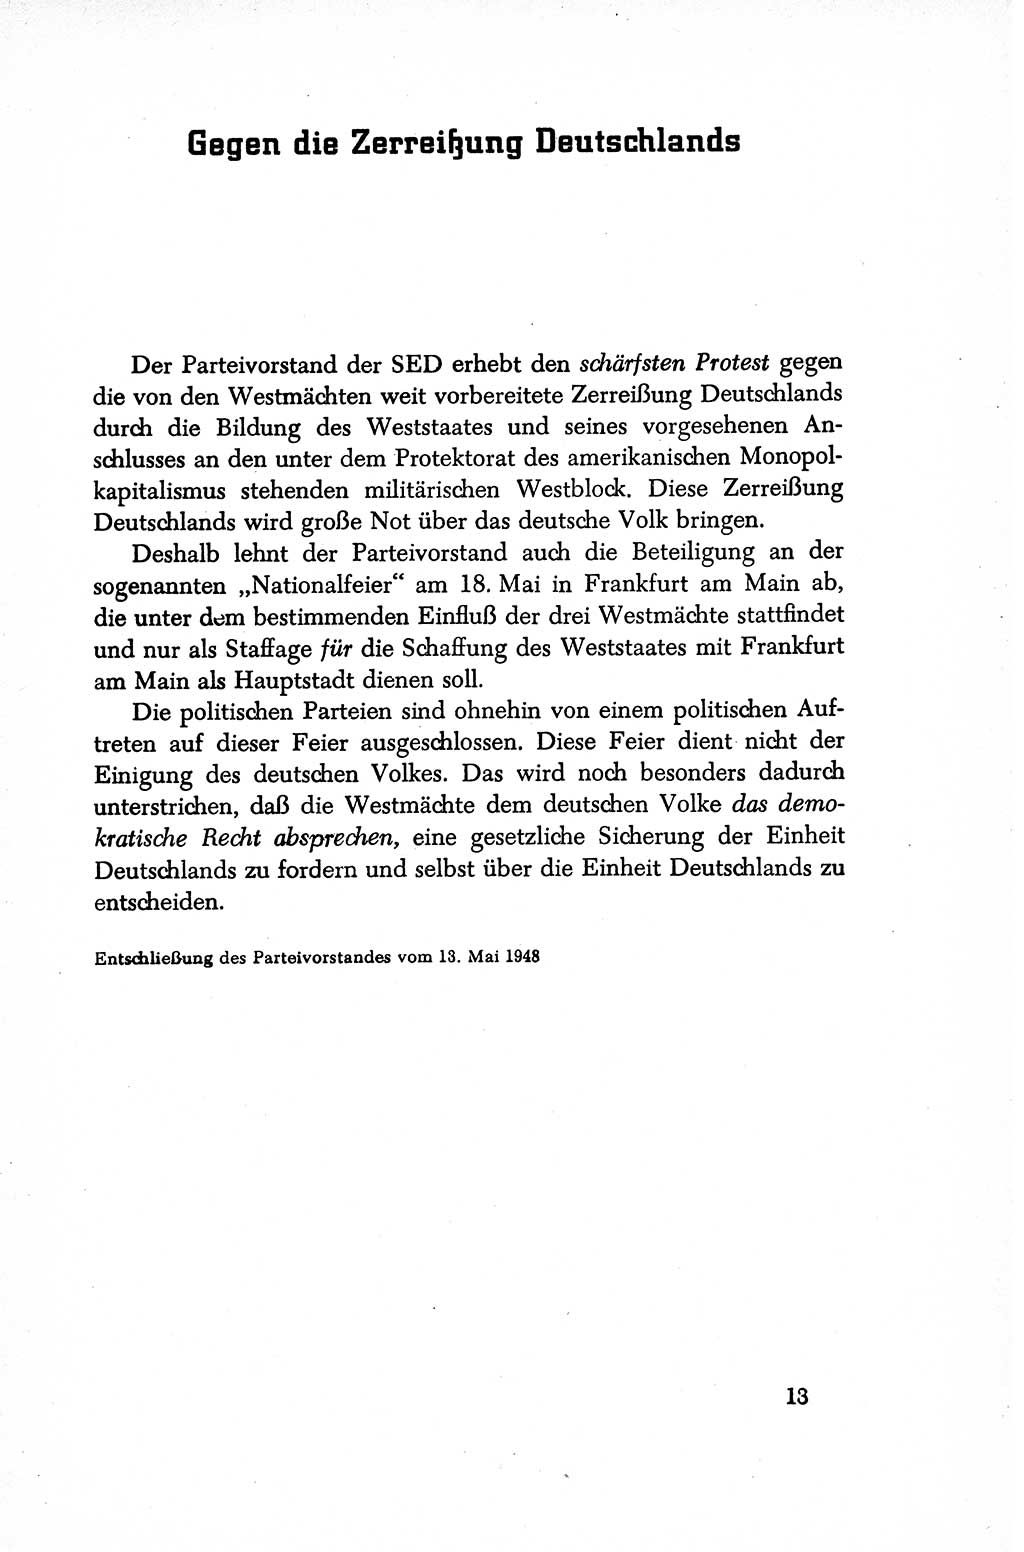 Dokumente der Sozialistischen Einheitspartei Deutschlands (SED) [Sowjetische Besatzungszone (SBZ) Deutschlands/Deutsche Demokratische Republik (DDR)] 1948-1950, Seite 13 (Dok. SED SBZ Dtl. DDR 1948-1950, S. 13)